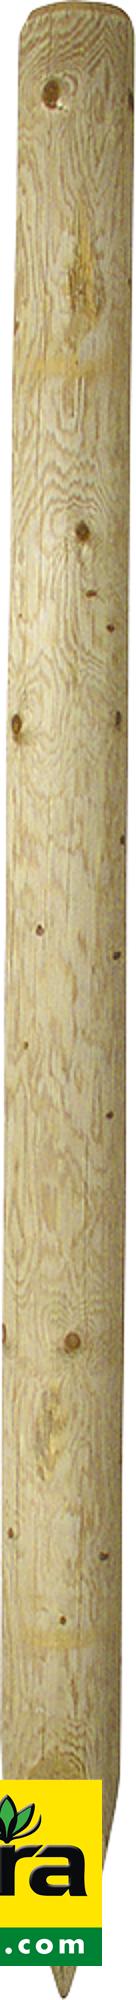 Holzpfosten, 2,00 m, imprägniert, gespitzt, d= 10 cm